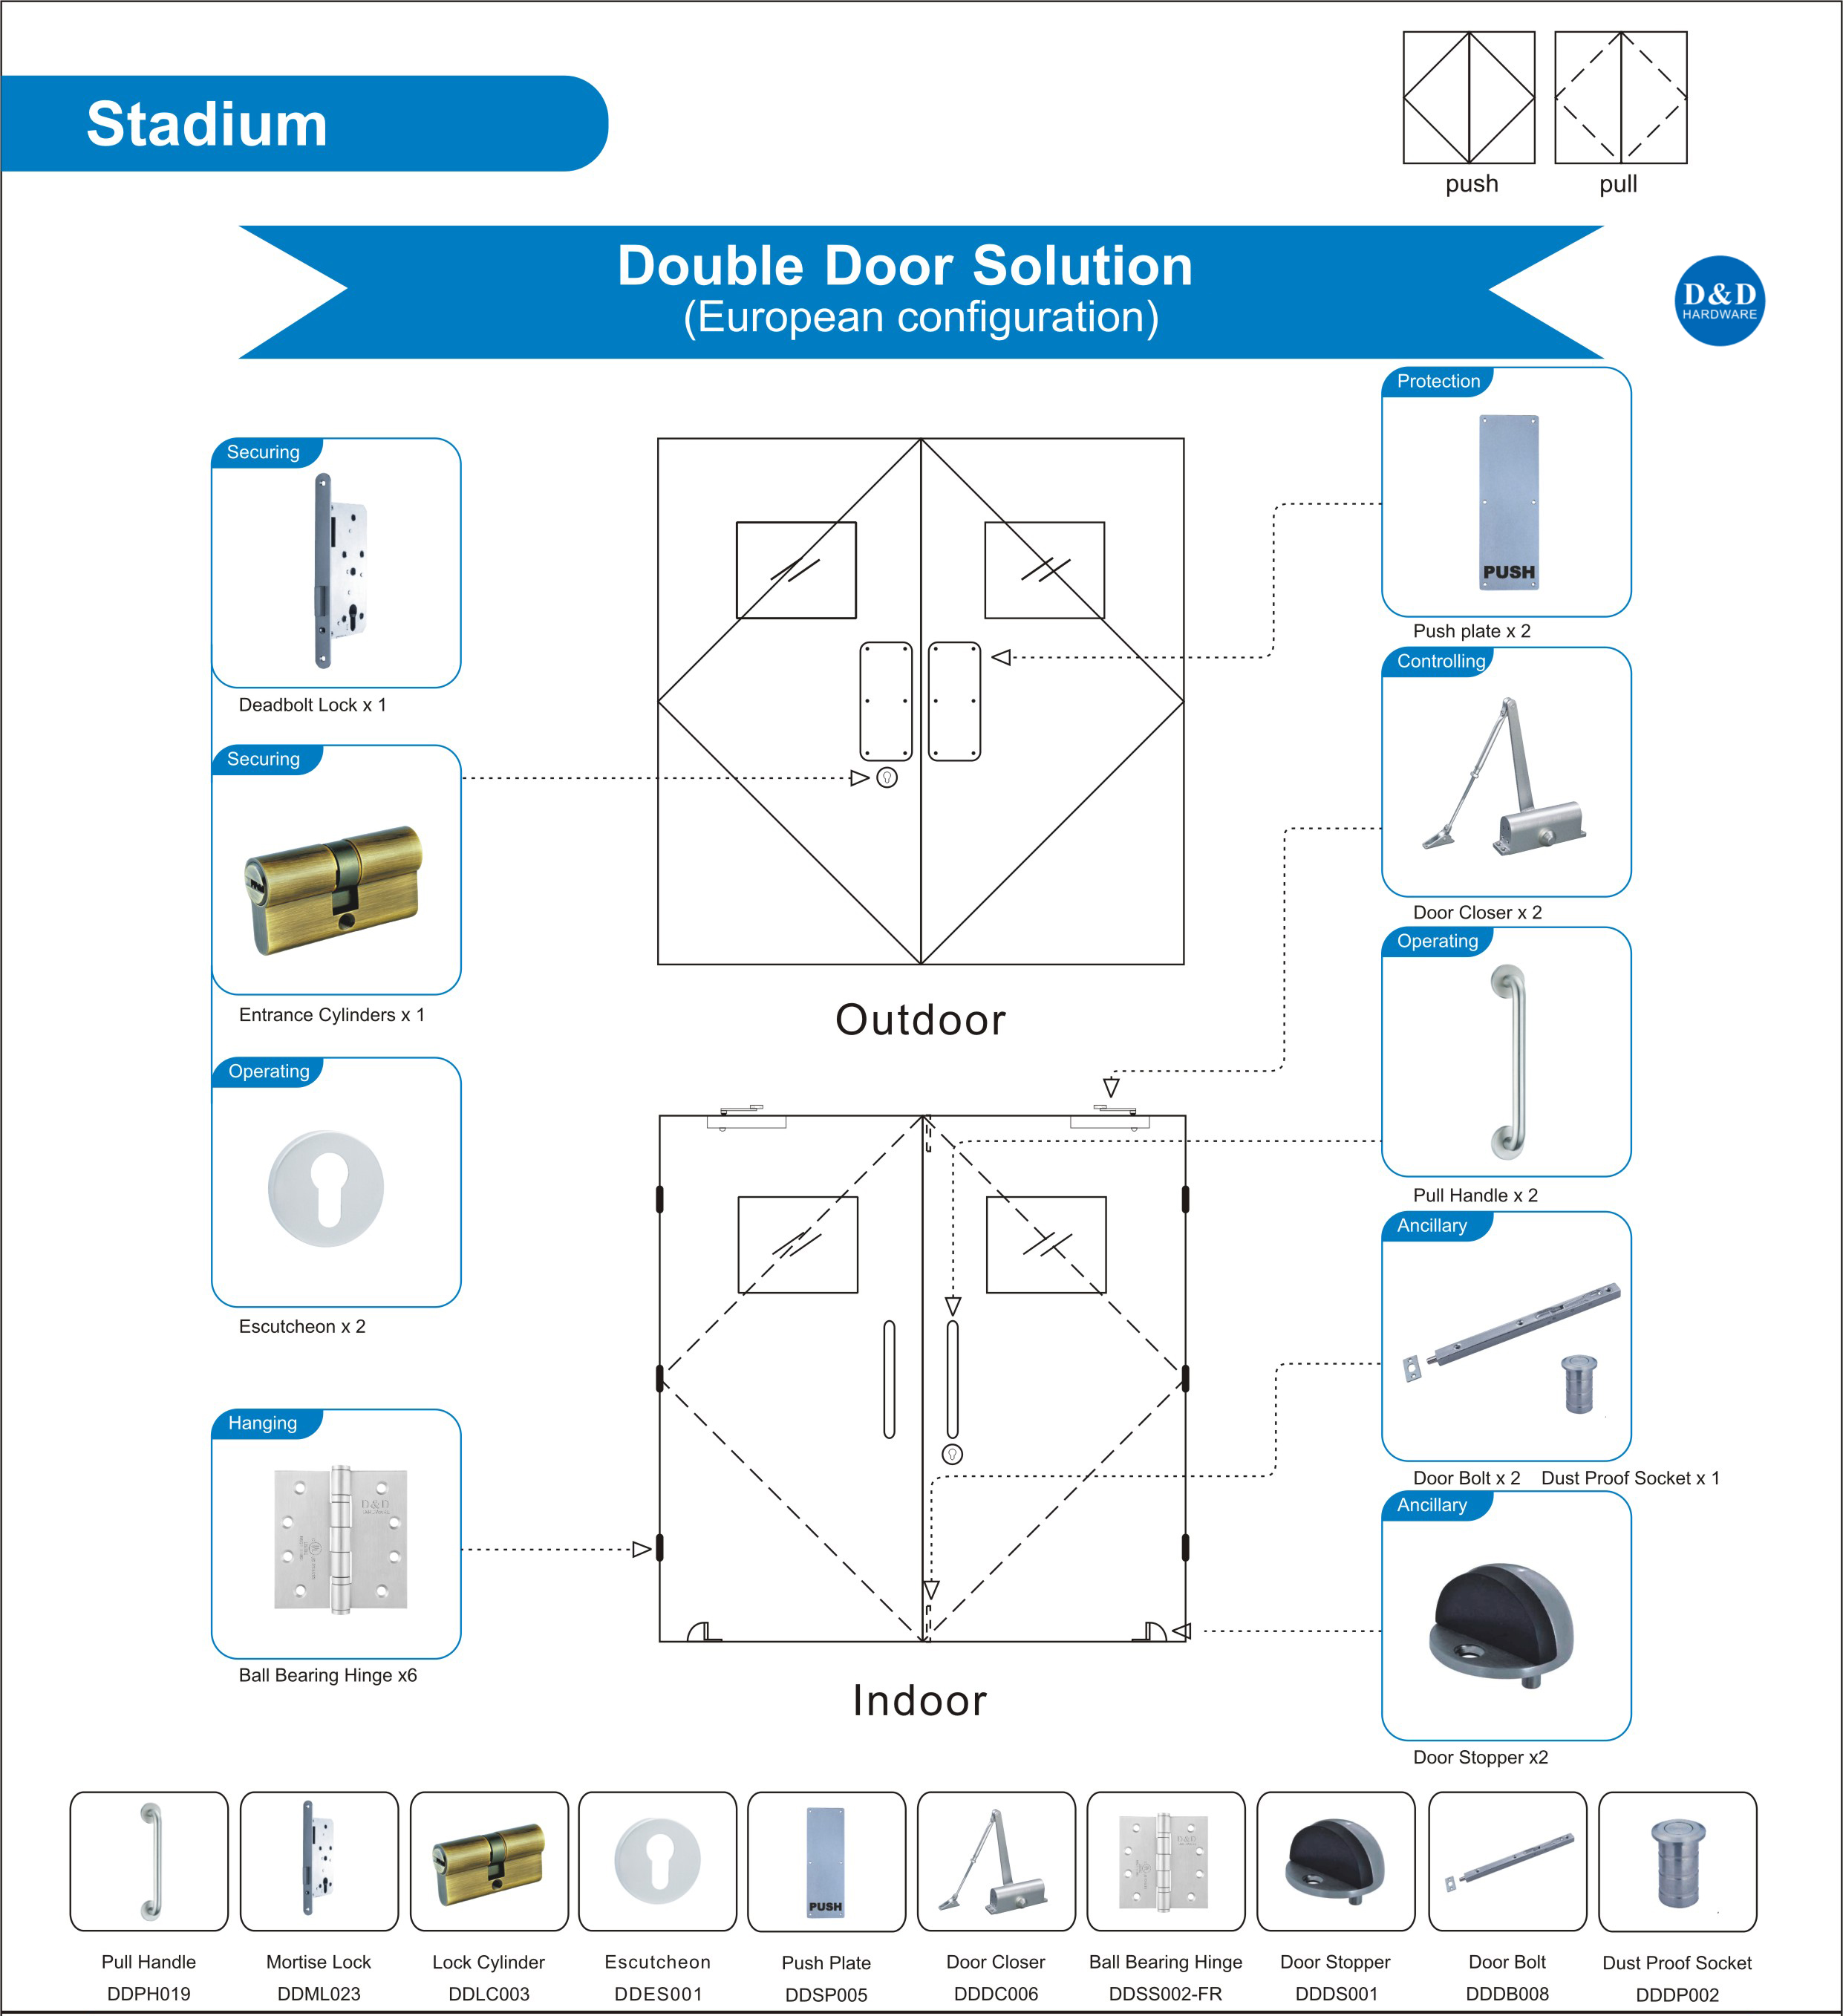 Building Hardware Solution for Stadium Double Door